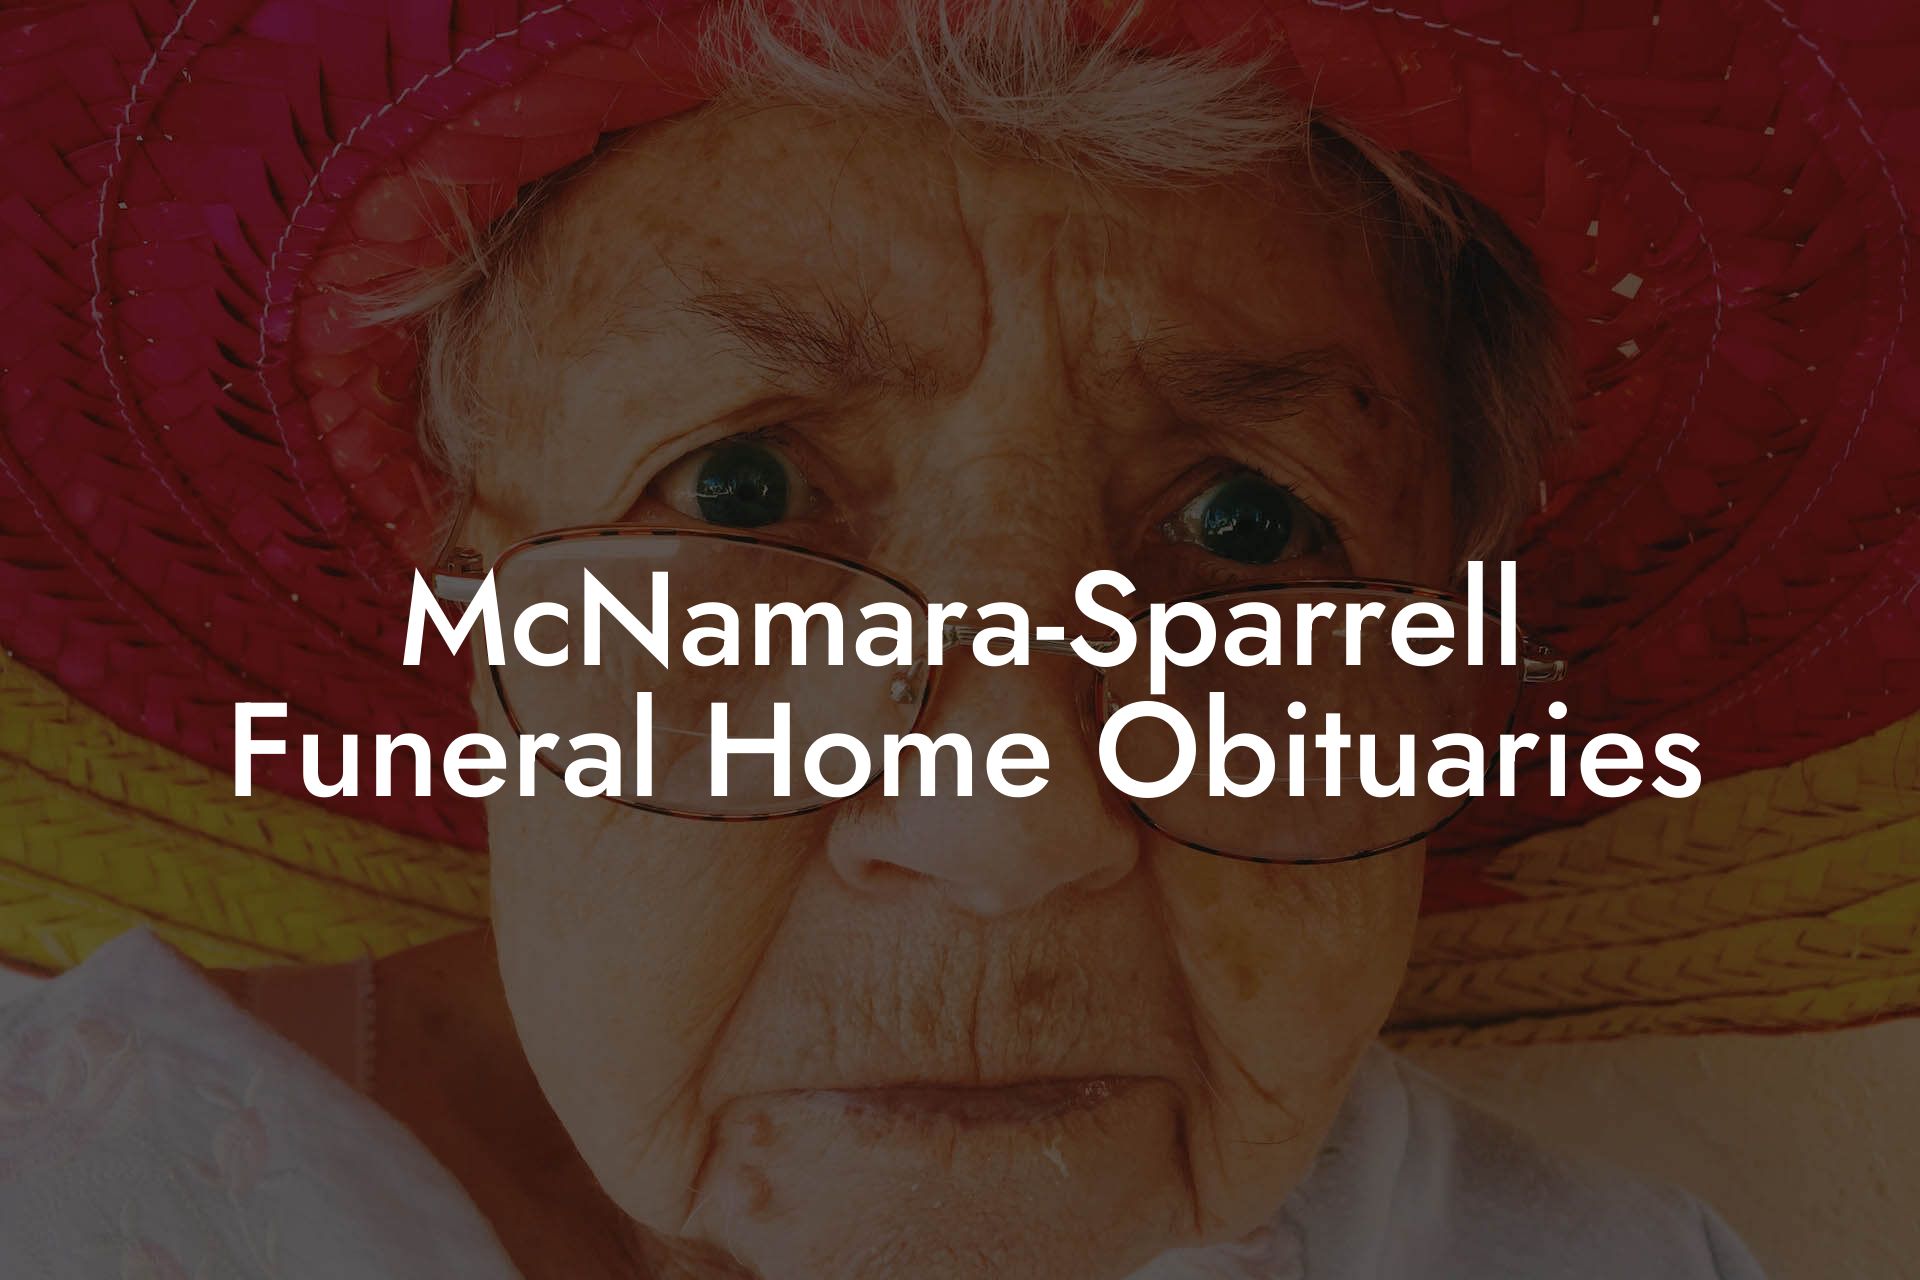 McNamara-Sparrell Funeral Home Obituaries